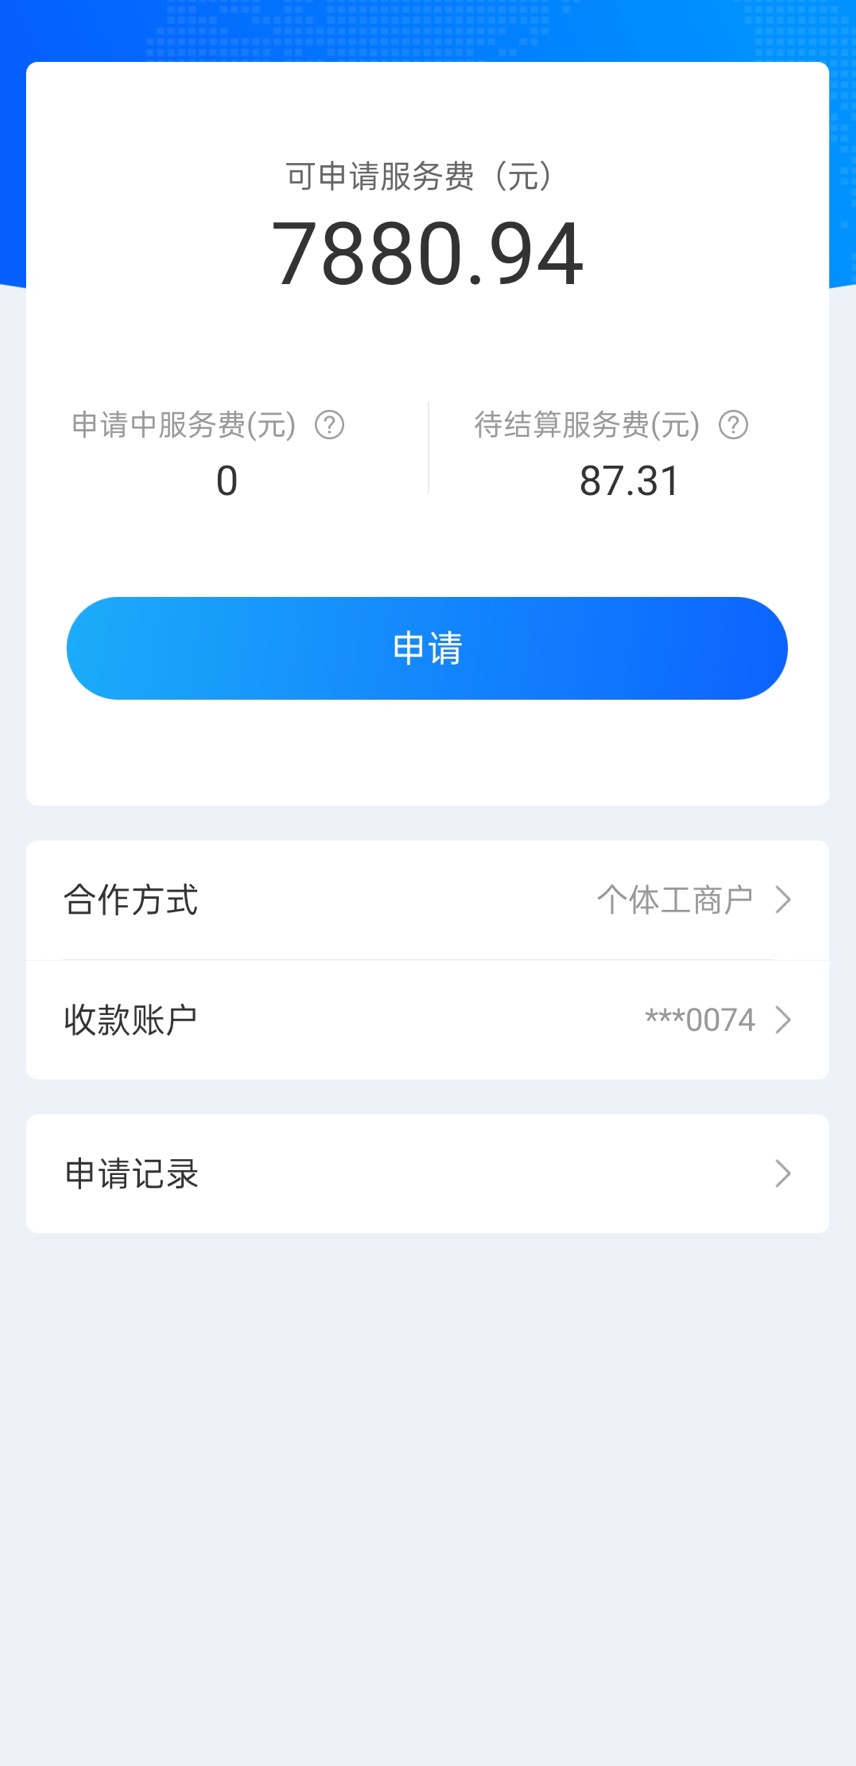 WeChat Image_20210520143136.jpg